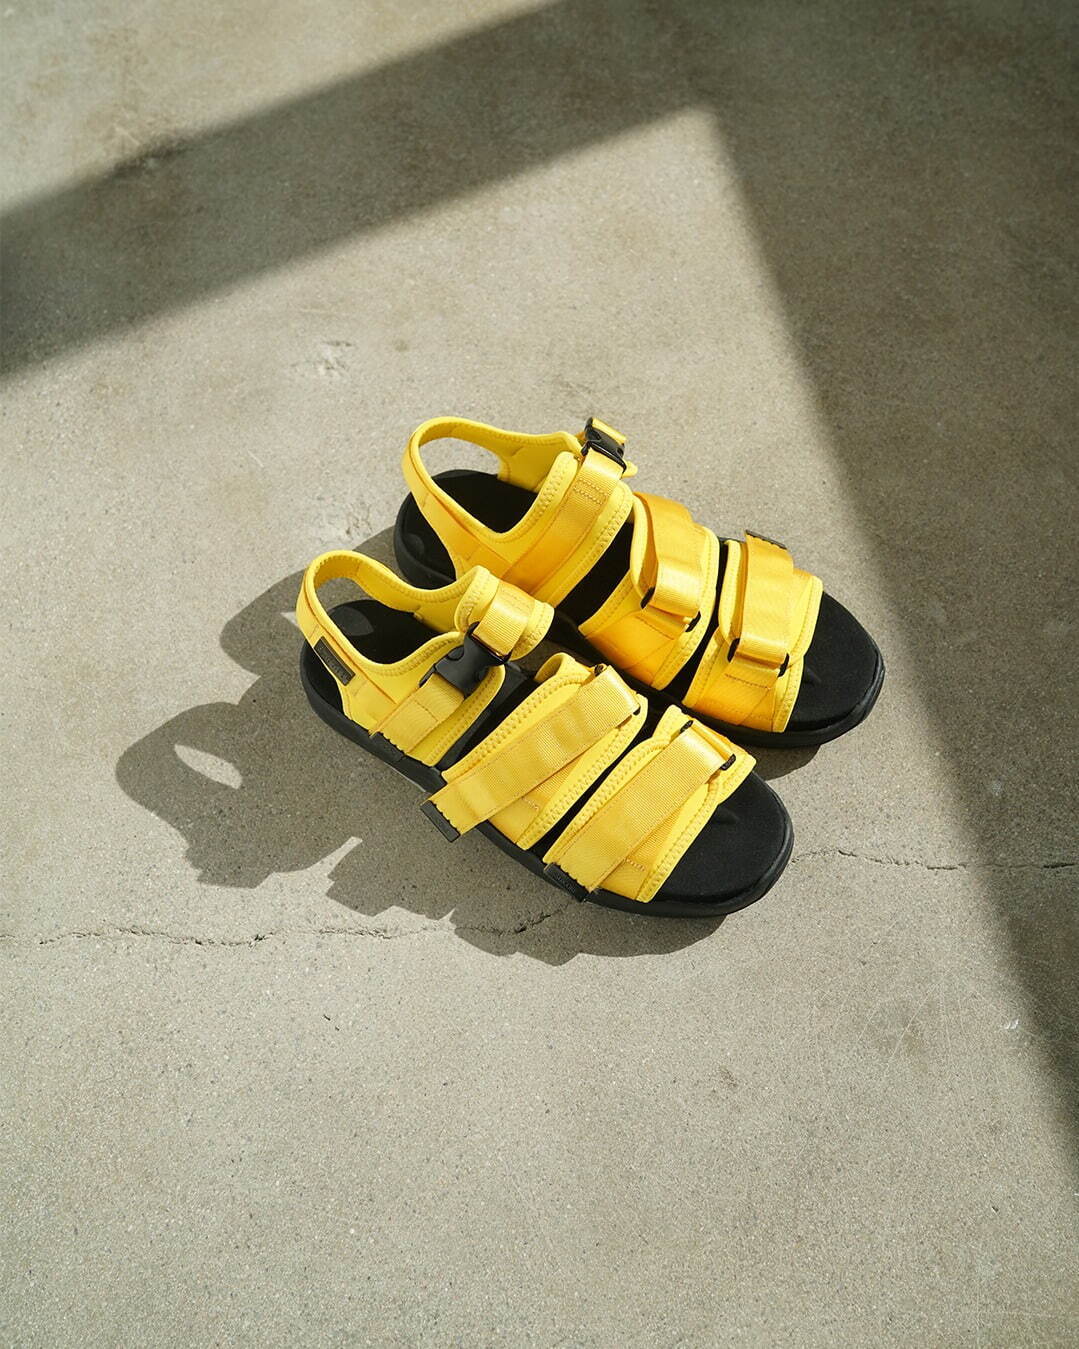 「Vega Sandal」44,000円